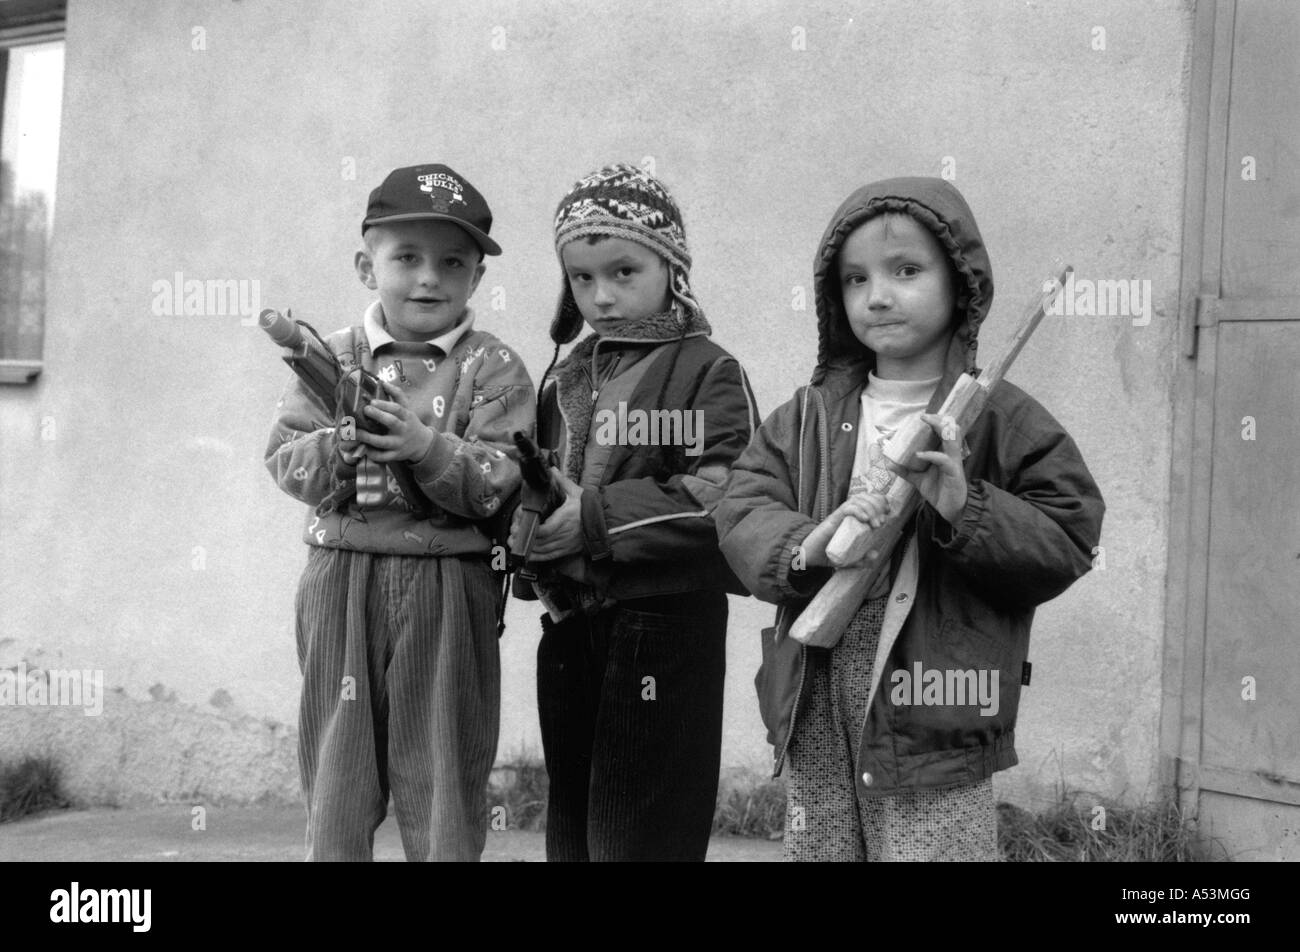 Painet ha1410 235 black and white war bosnian refugee children boys guns gun boy czech republic country developing nation Stock Photo